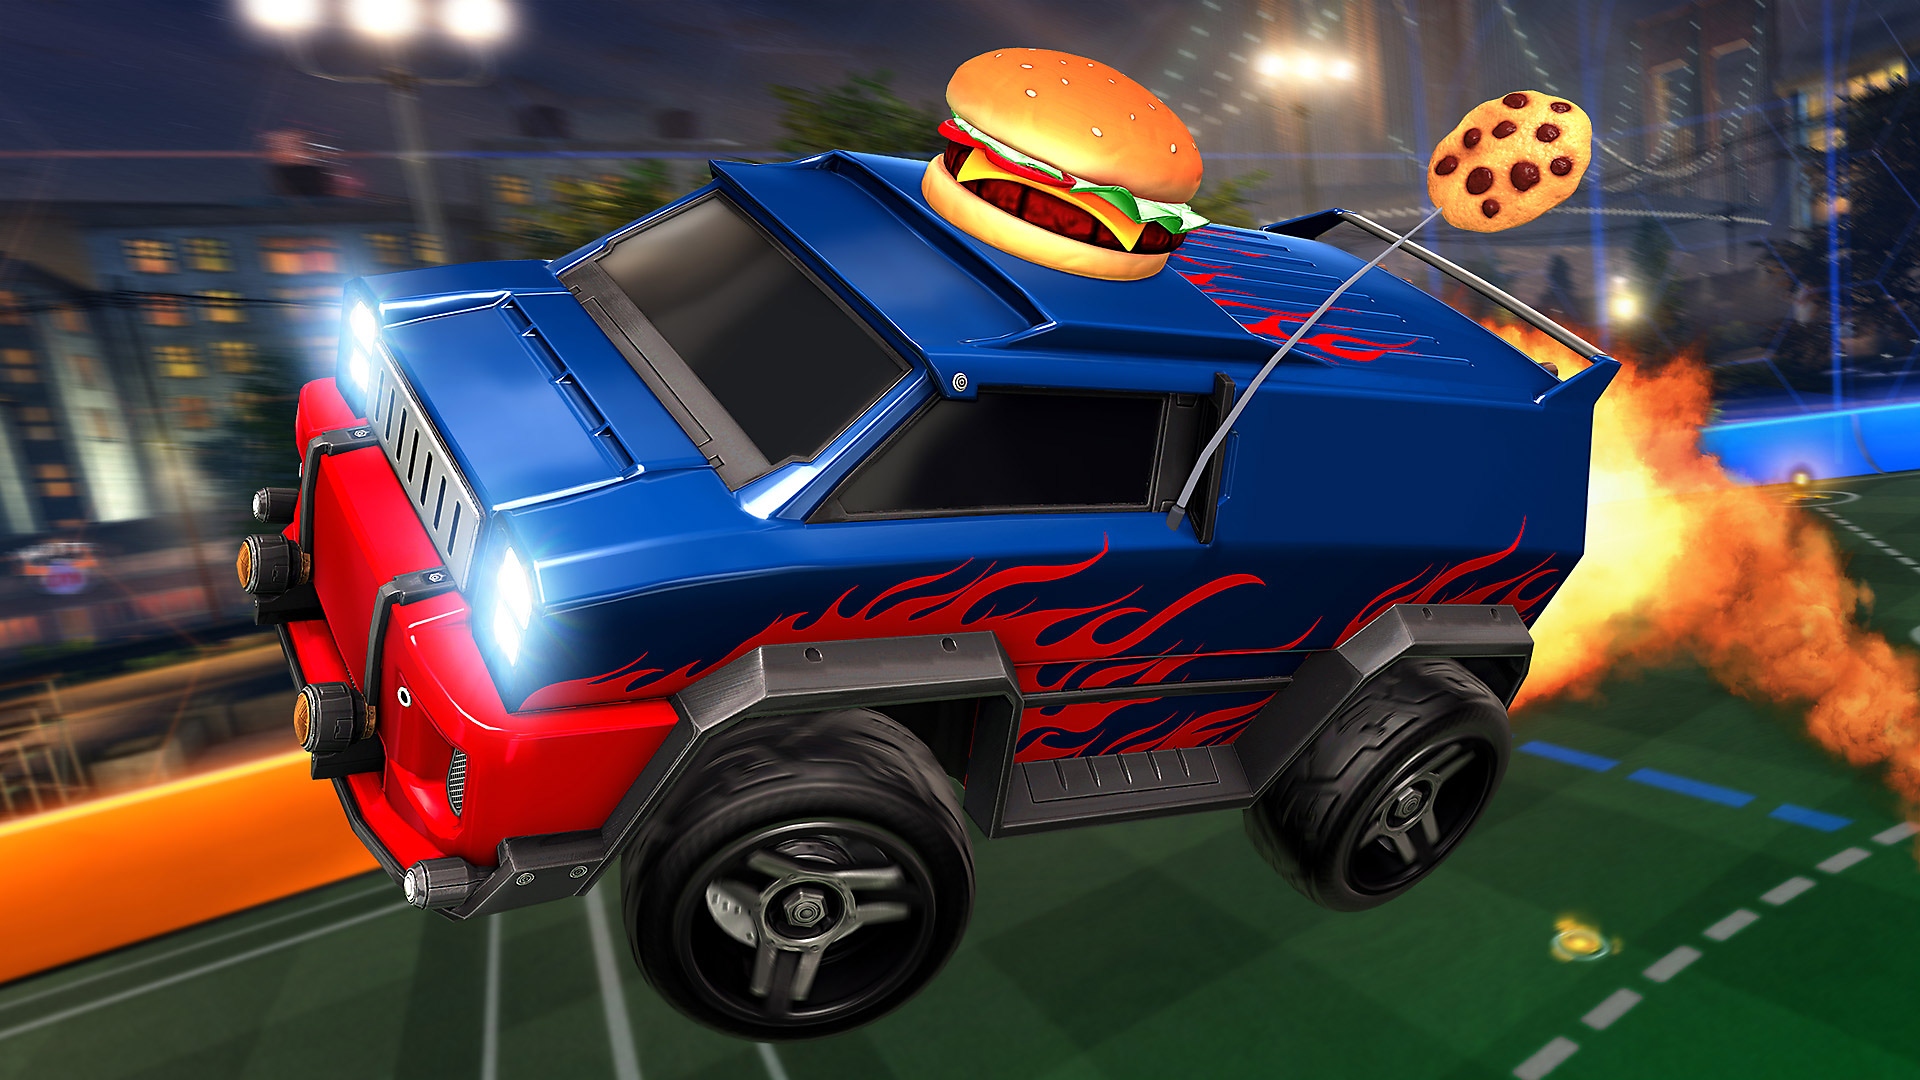 Rocket League - skærmbillede med en rød varevogn med en burgernyhed på taget